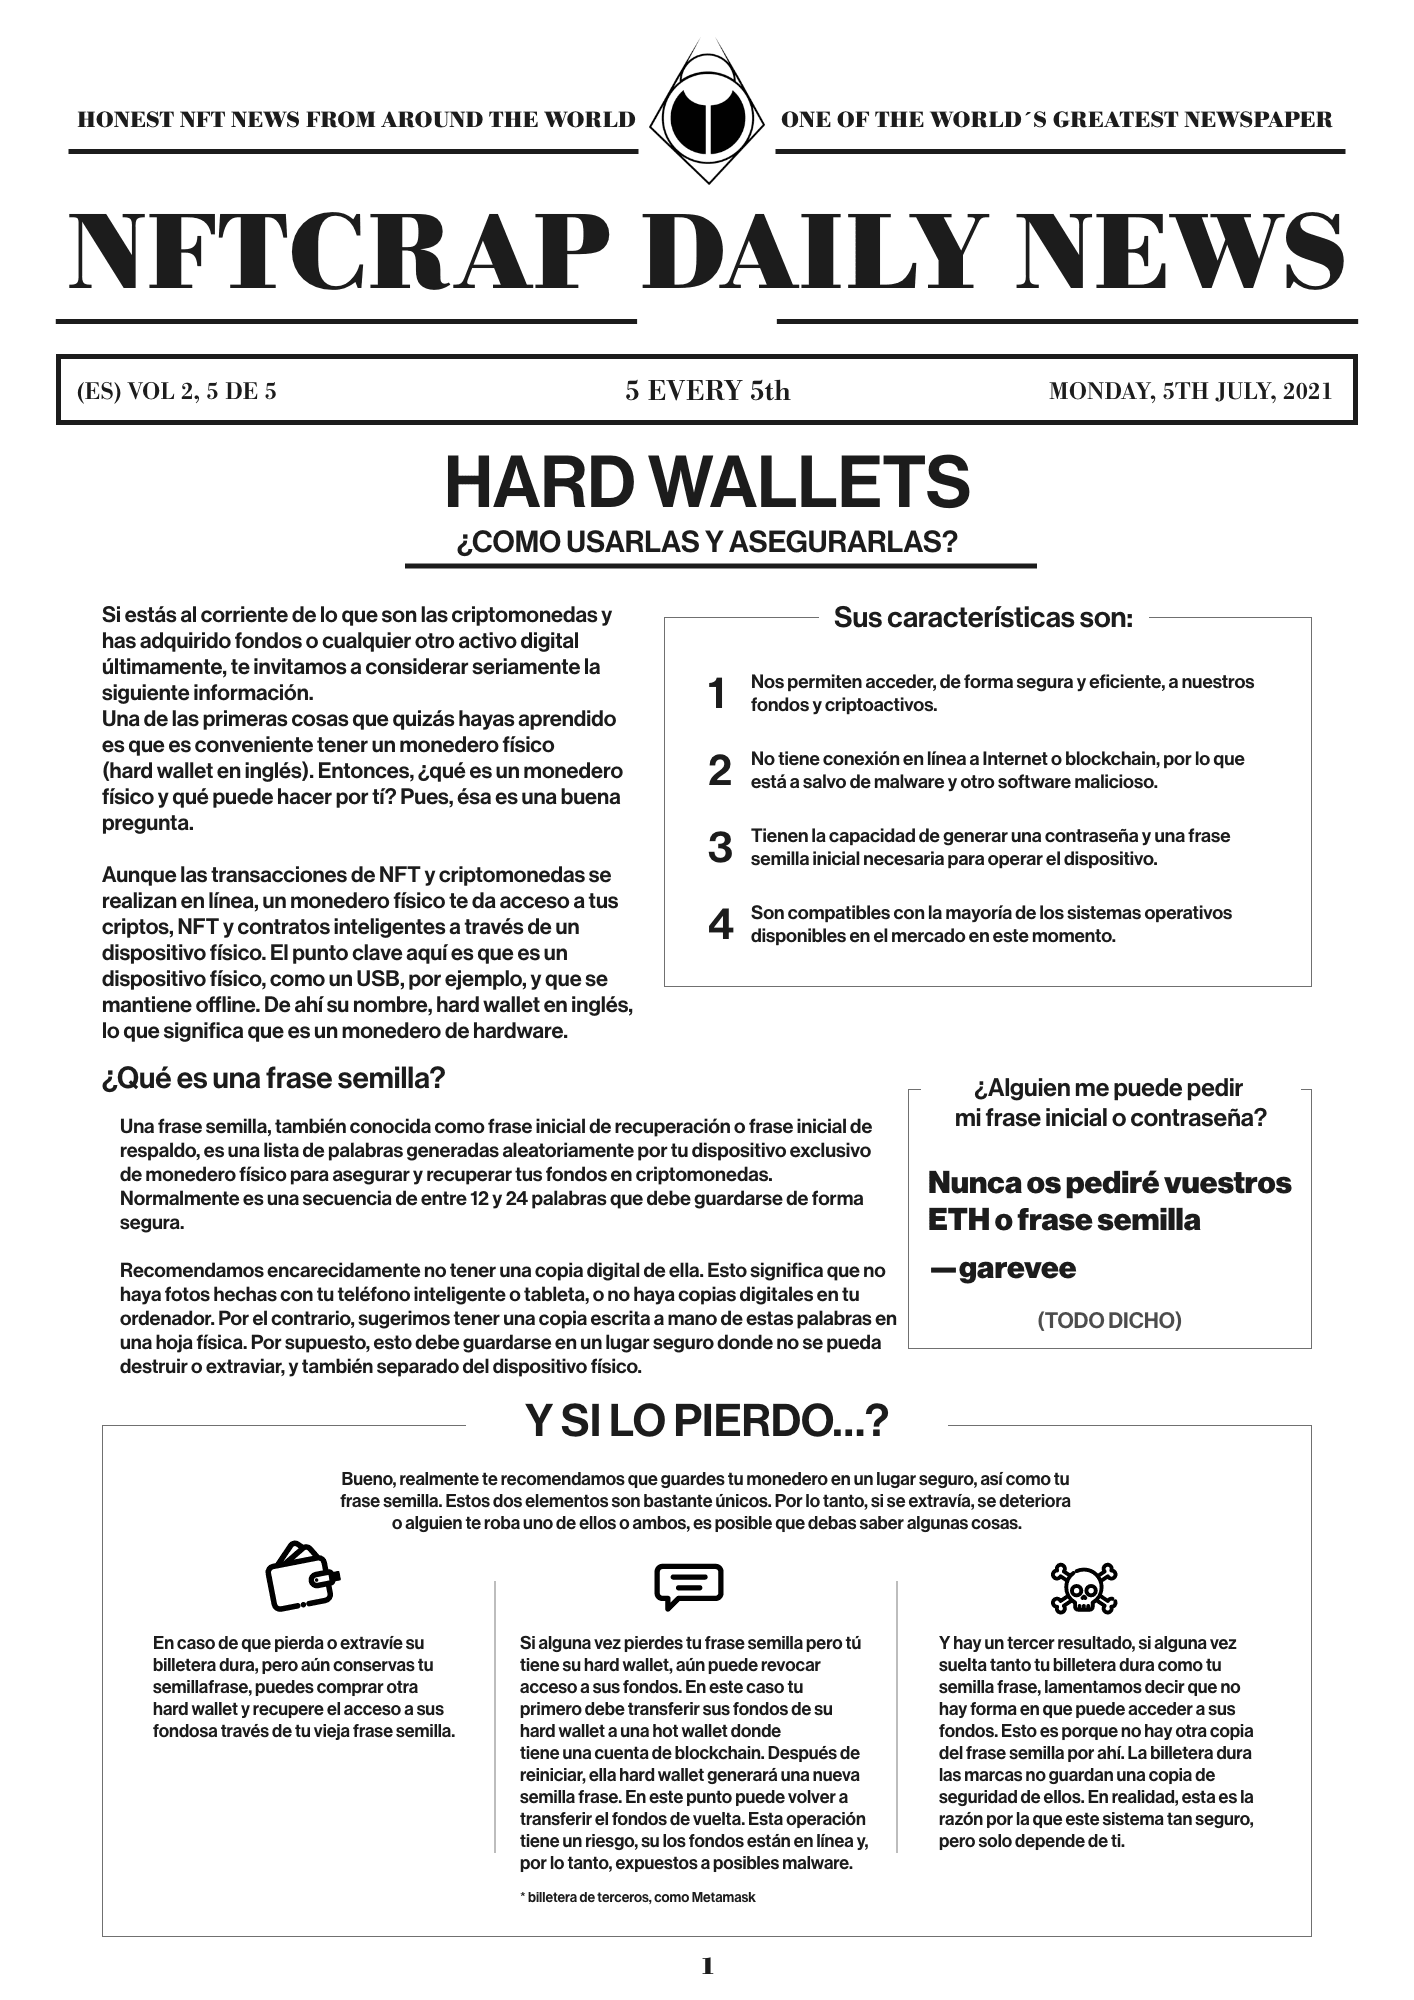 Hard Wallets (ES) #5/5